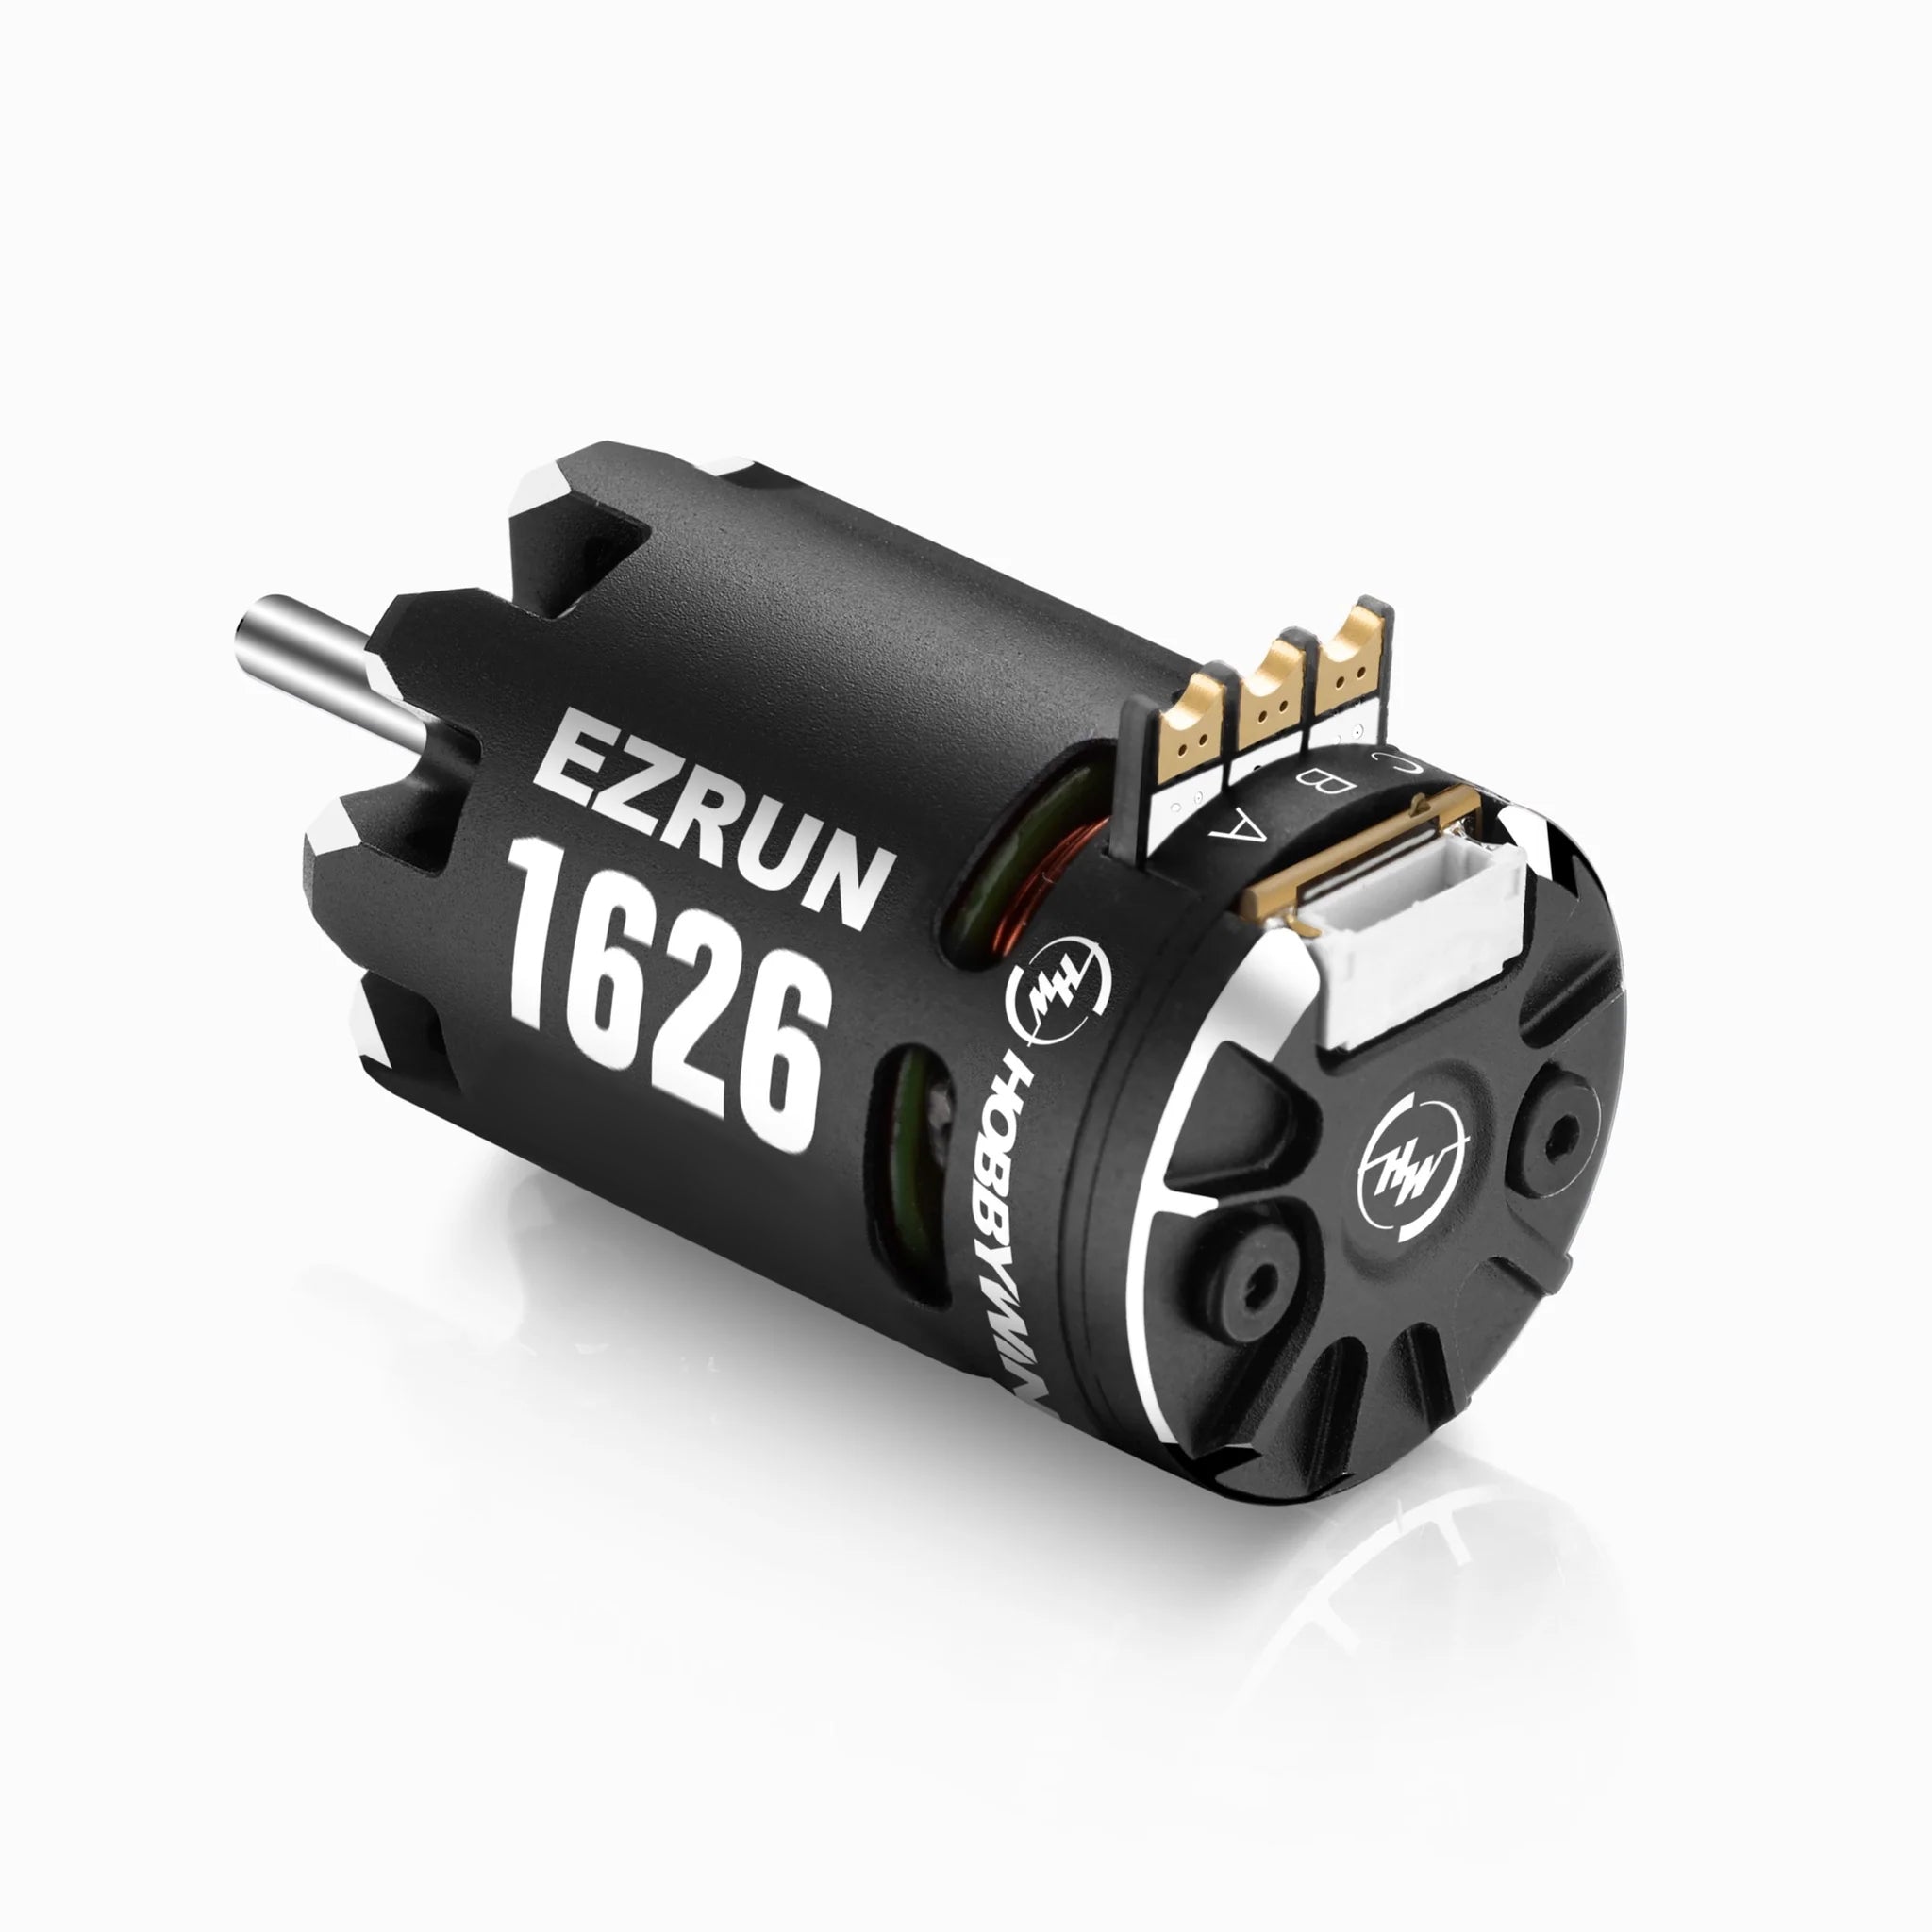 Hobbywing - EZRun 1626 Sensored Brushless Motor (6500Kv)